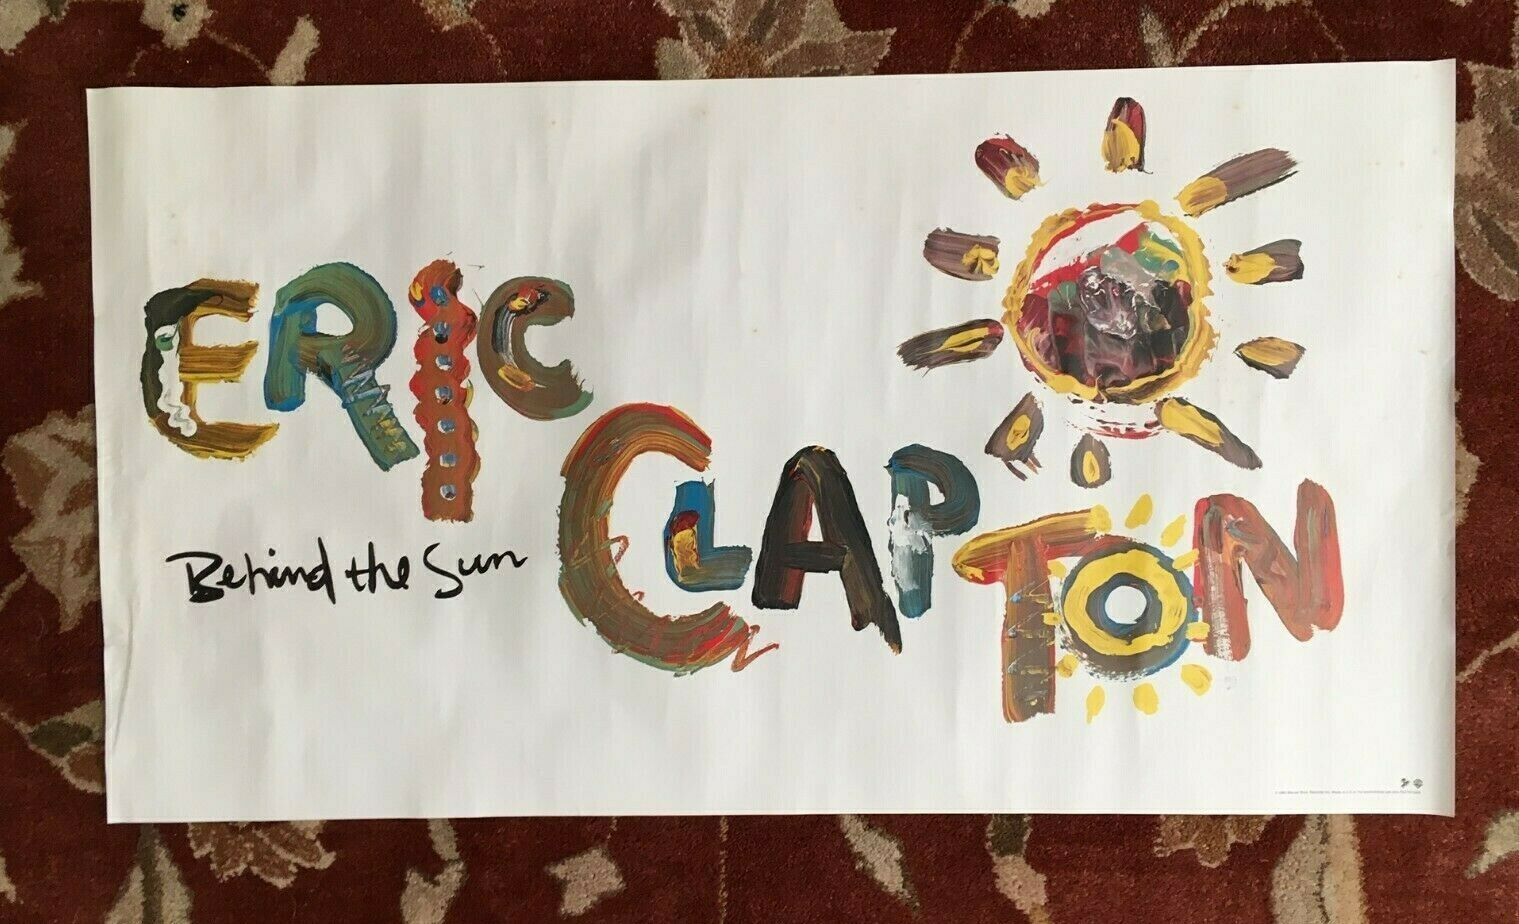 Eric Clapton  Behind The Sun  Rare Original Promotional Poster